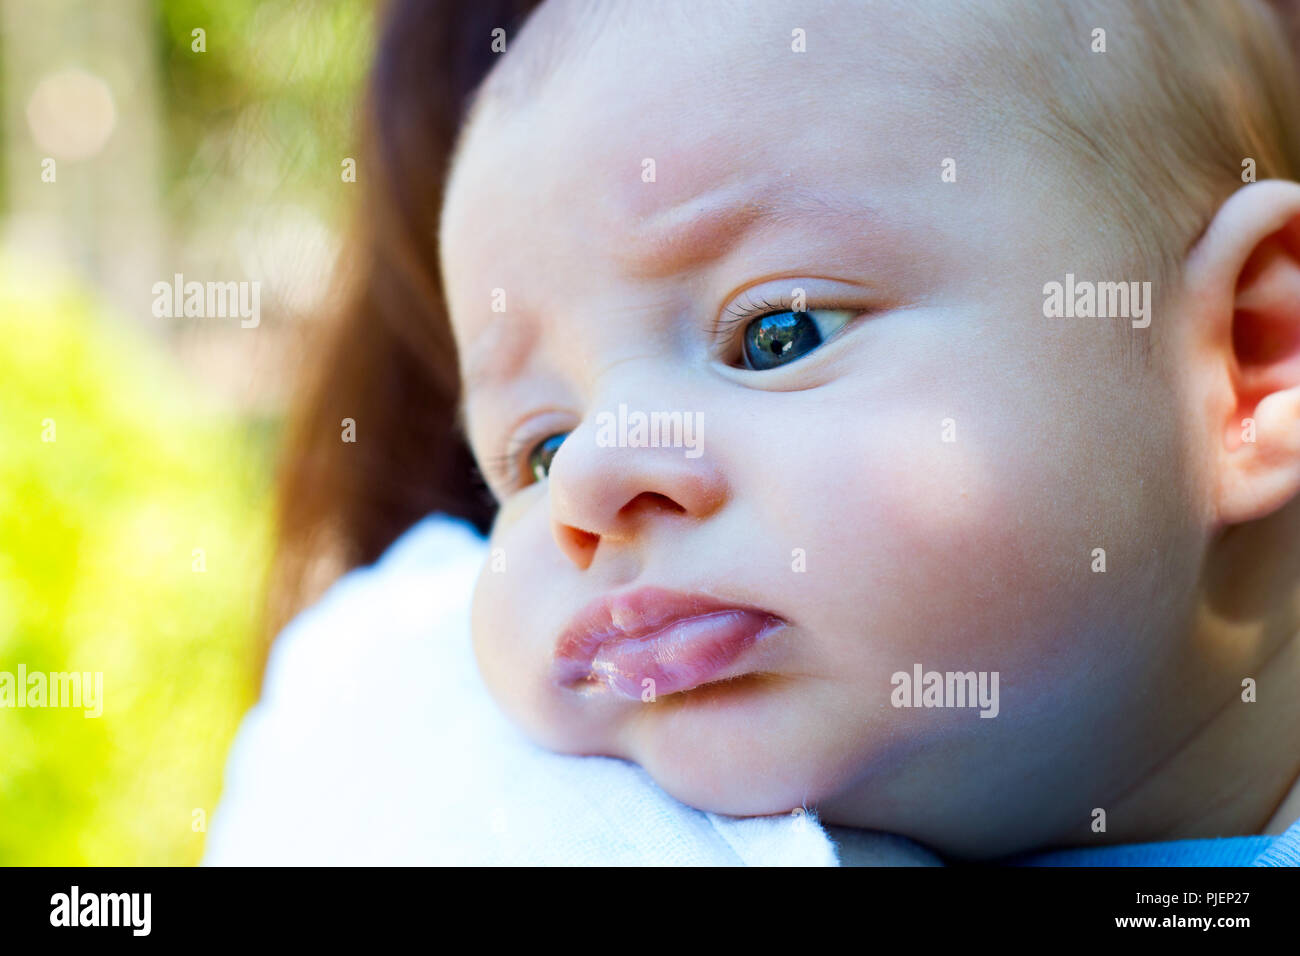 Süße kleine Baby ruhender Kopf auf die Mutter arm, schönes Kind mit blau grüne Augen, Nahaufnahme, Porträt des Säuglings aufstoßen auf Mom's Schulter Stockfoto